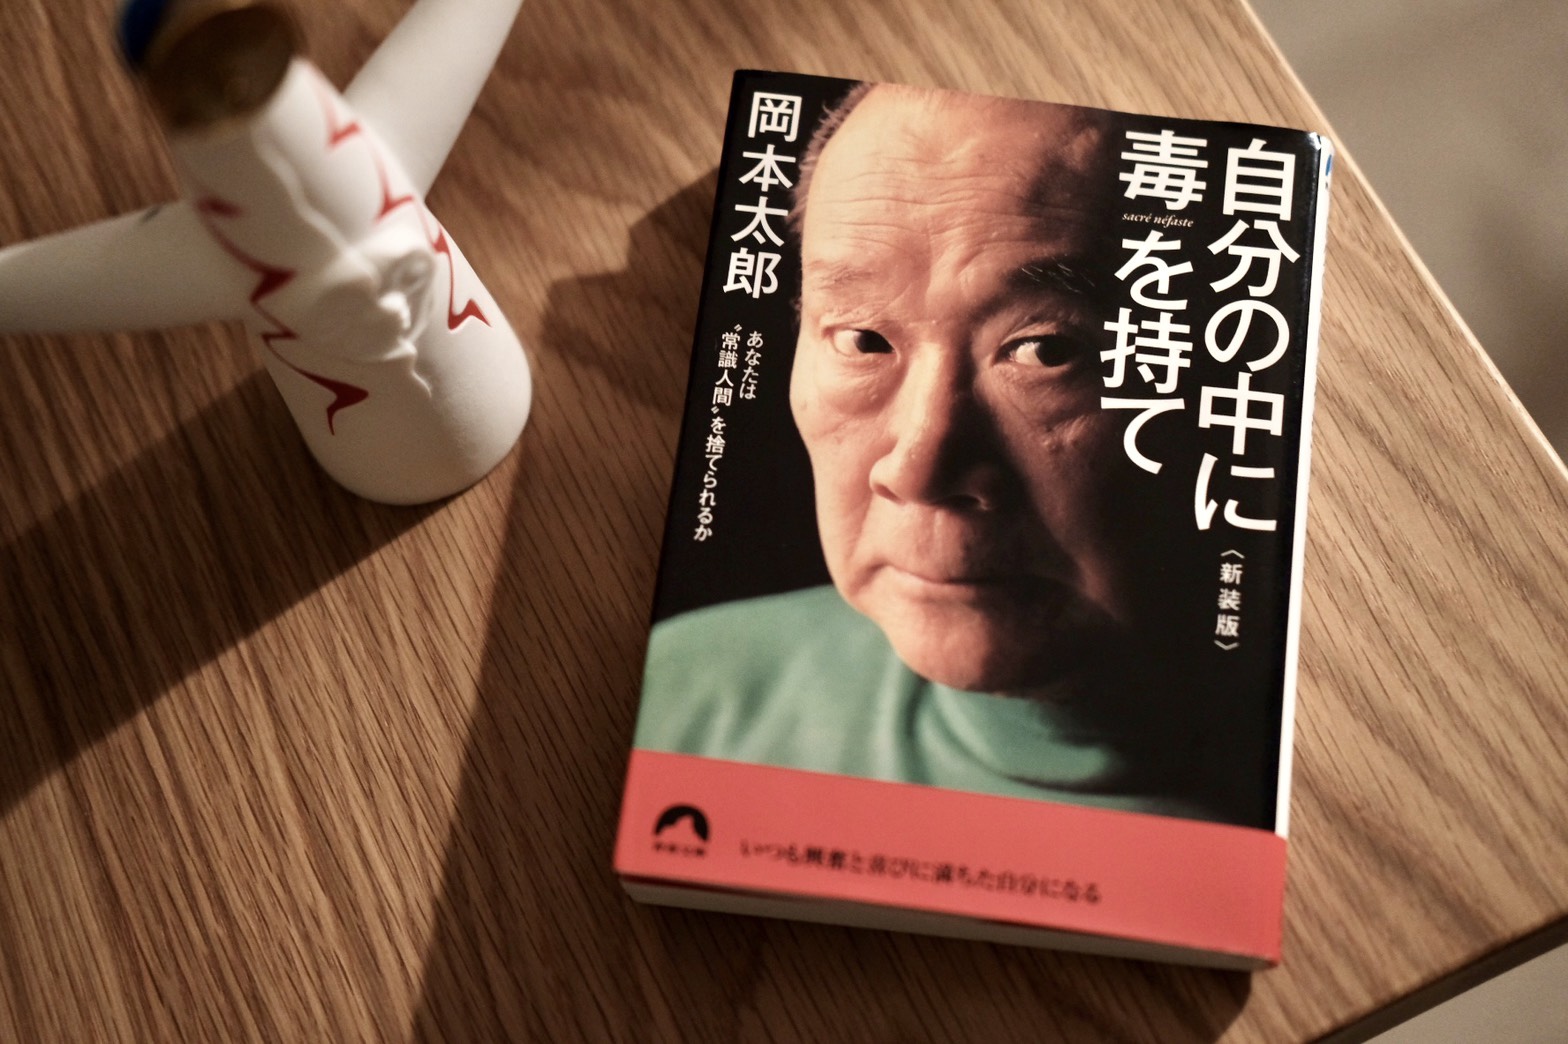 連載 本と生活と Vol 8 岡本太郎 自分の中に毒を持て Storywriter